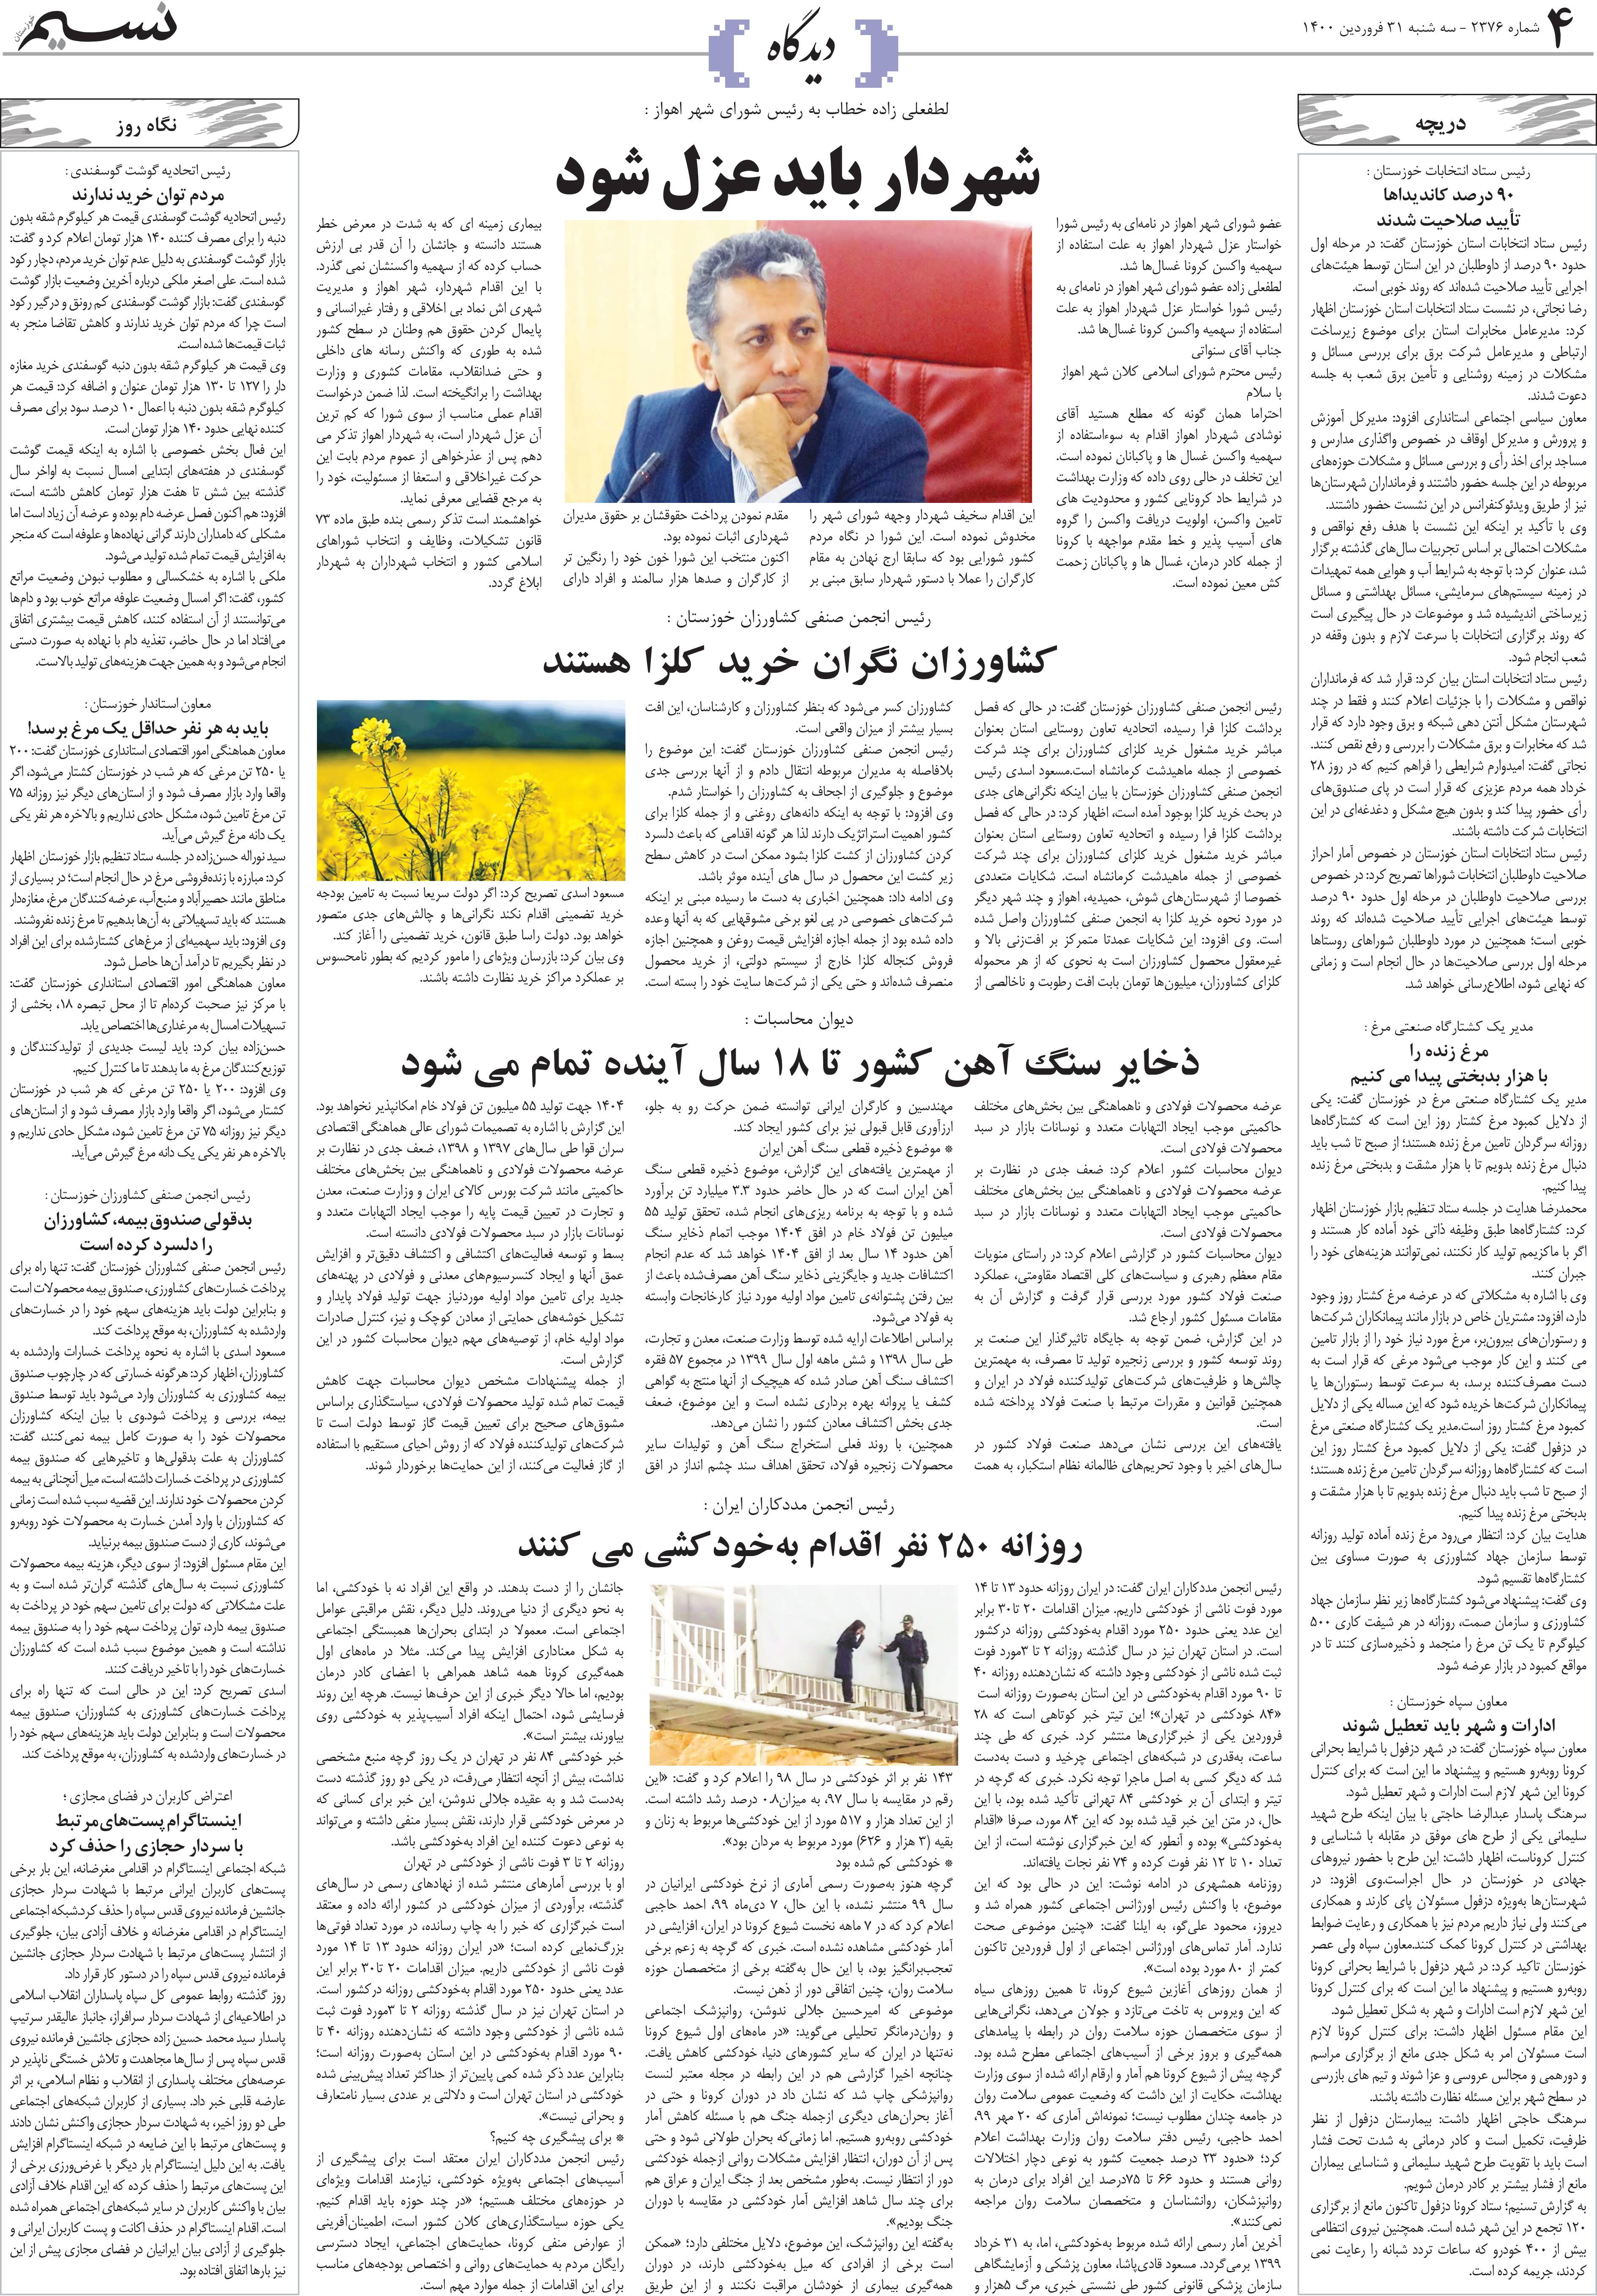 صفحه دیدگاه روزنامه نسیم شماره 2376